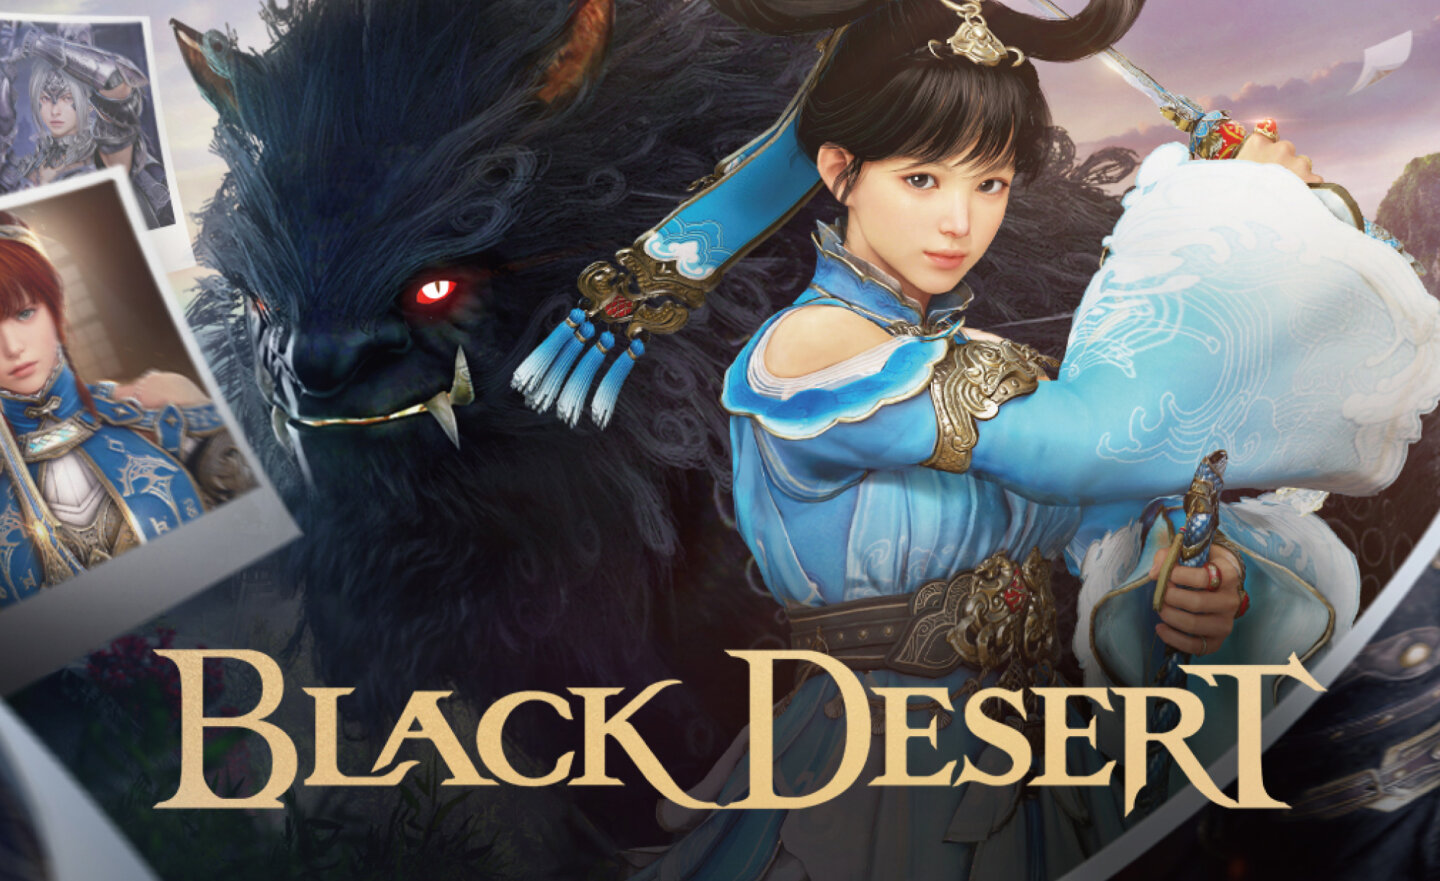 【限時免費】登入 Steam 領取 MMORPG《Black Desert 黑色沙漠》，2023 年 3 月 10 日凌晨 2:00 前永久保留